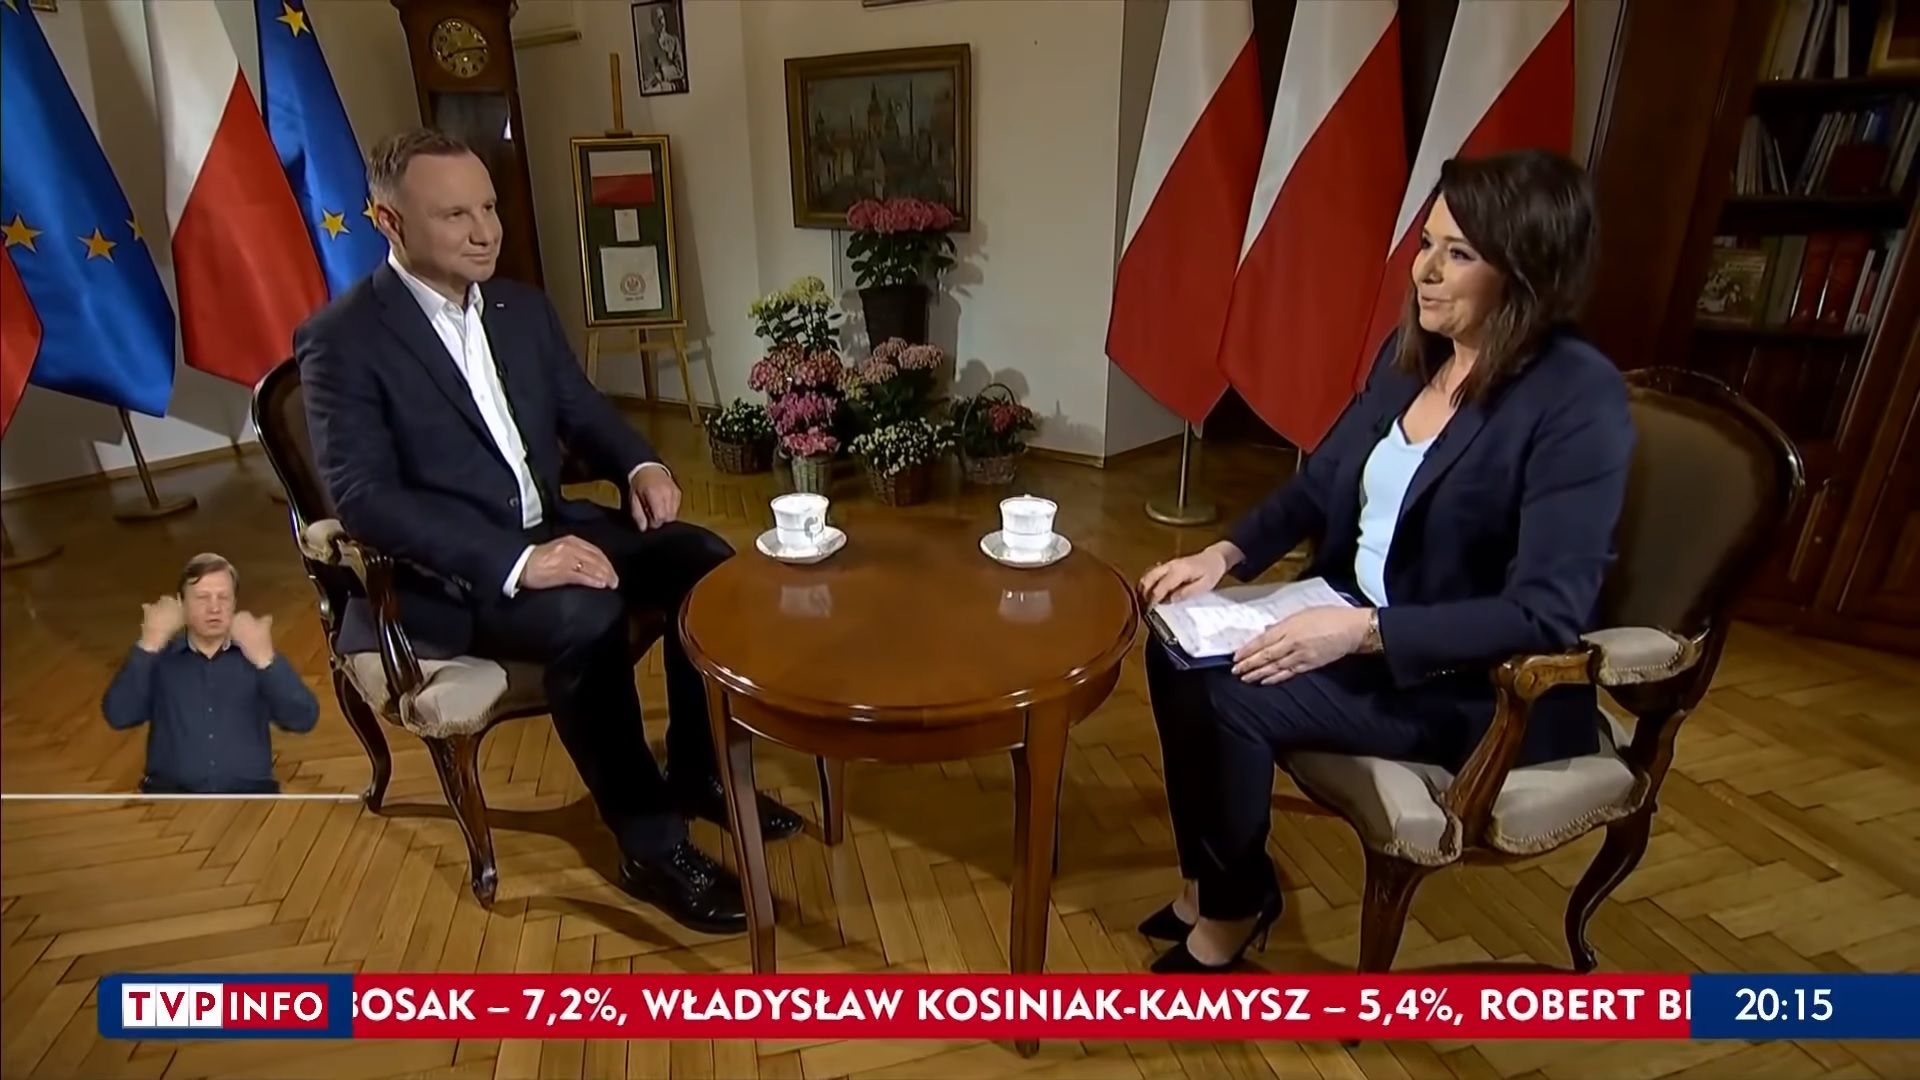 По време на кампанията главното вечерно предаване по ТVP "Вядомошчи" представяше сегашния държавен глава Анджей Дуда като достоен държавник, който работи за благото на страната, докато Рафал Тшасковски - кметът на Варшава, и негов главен съперник, беше пр